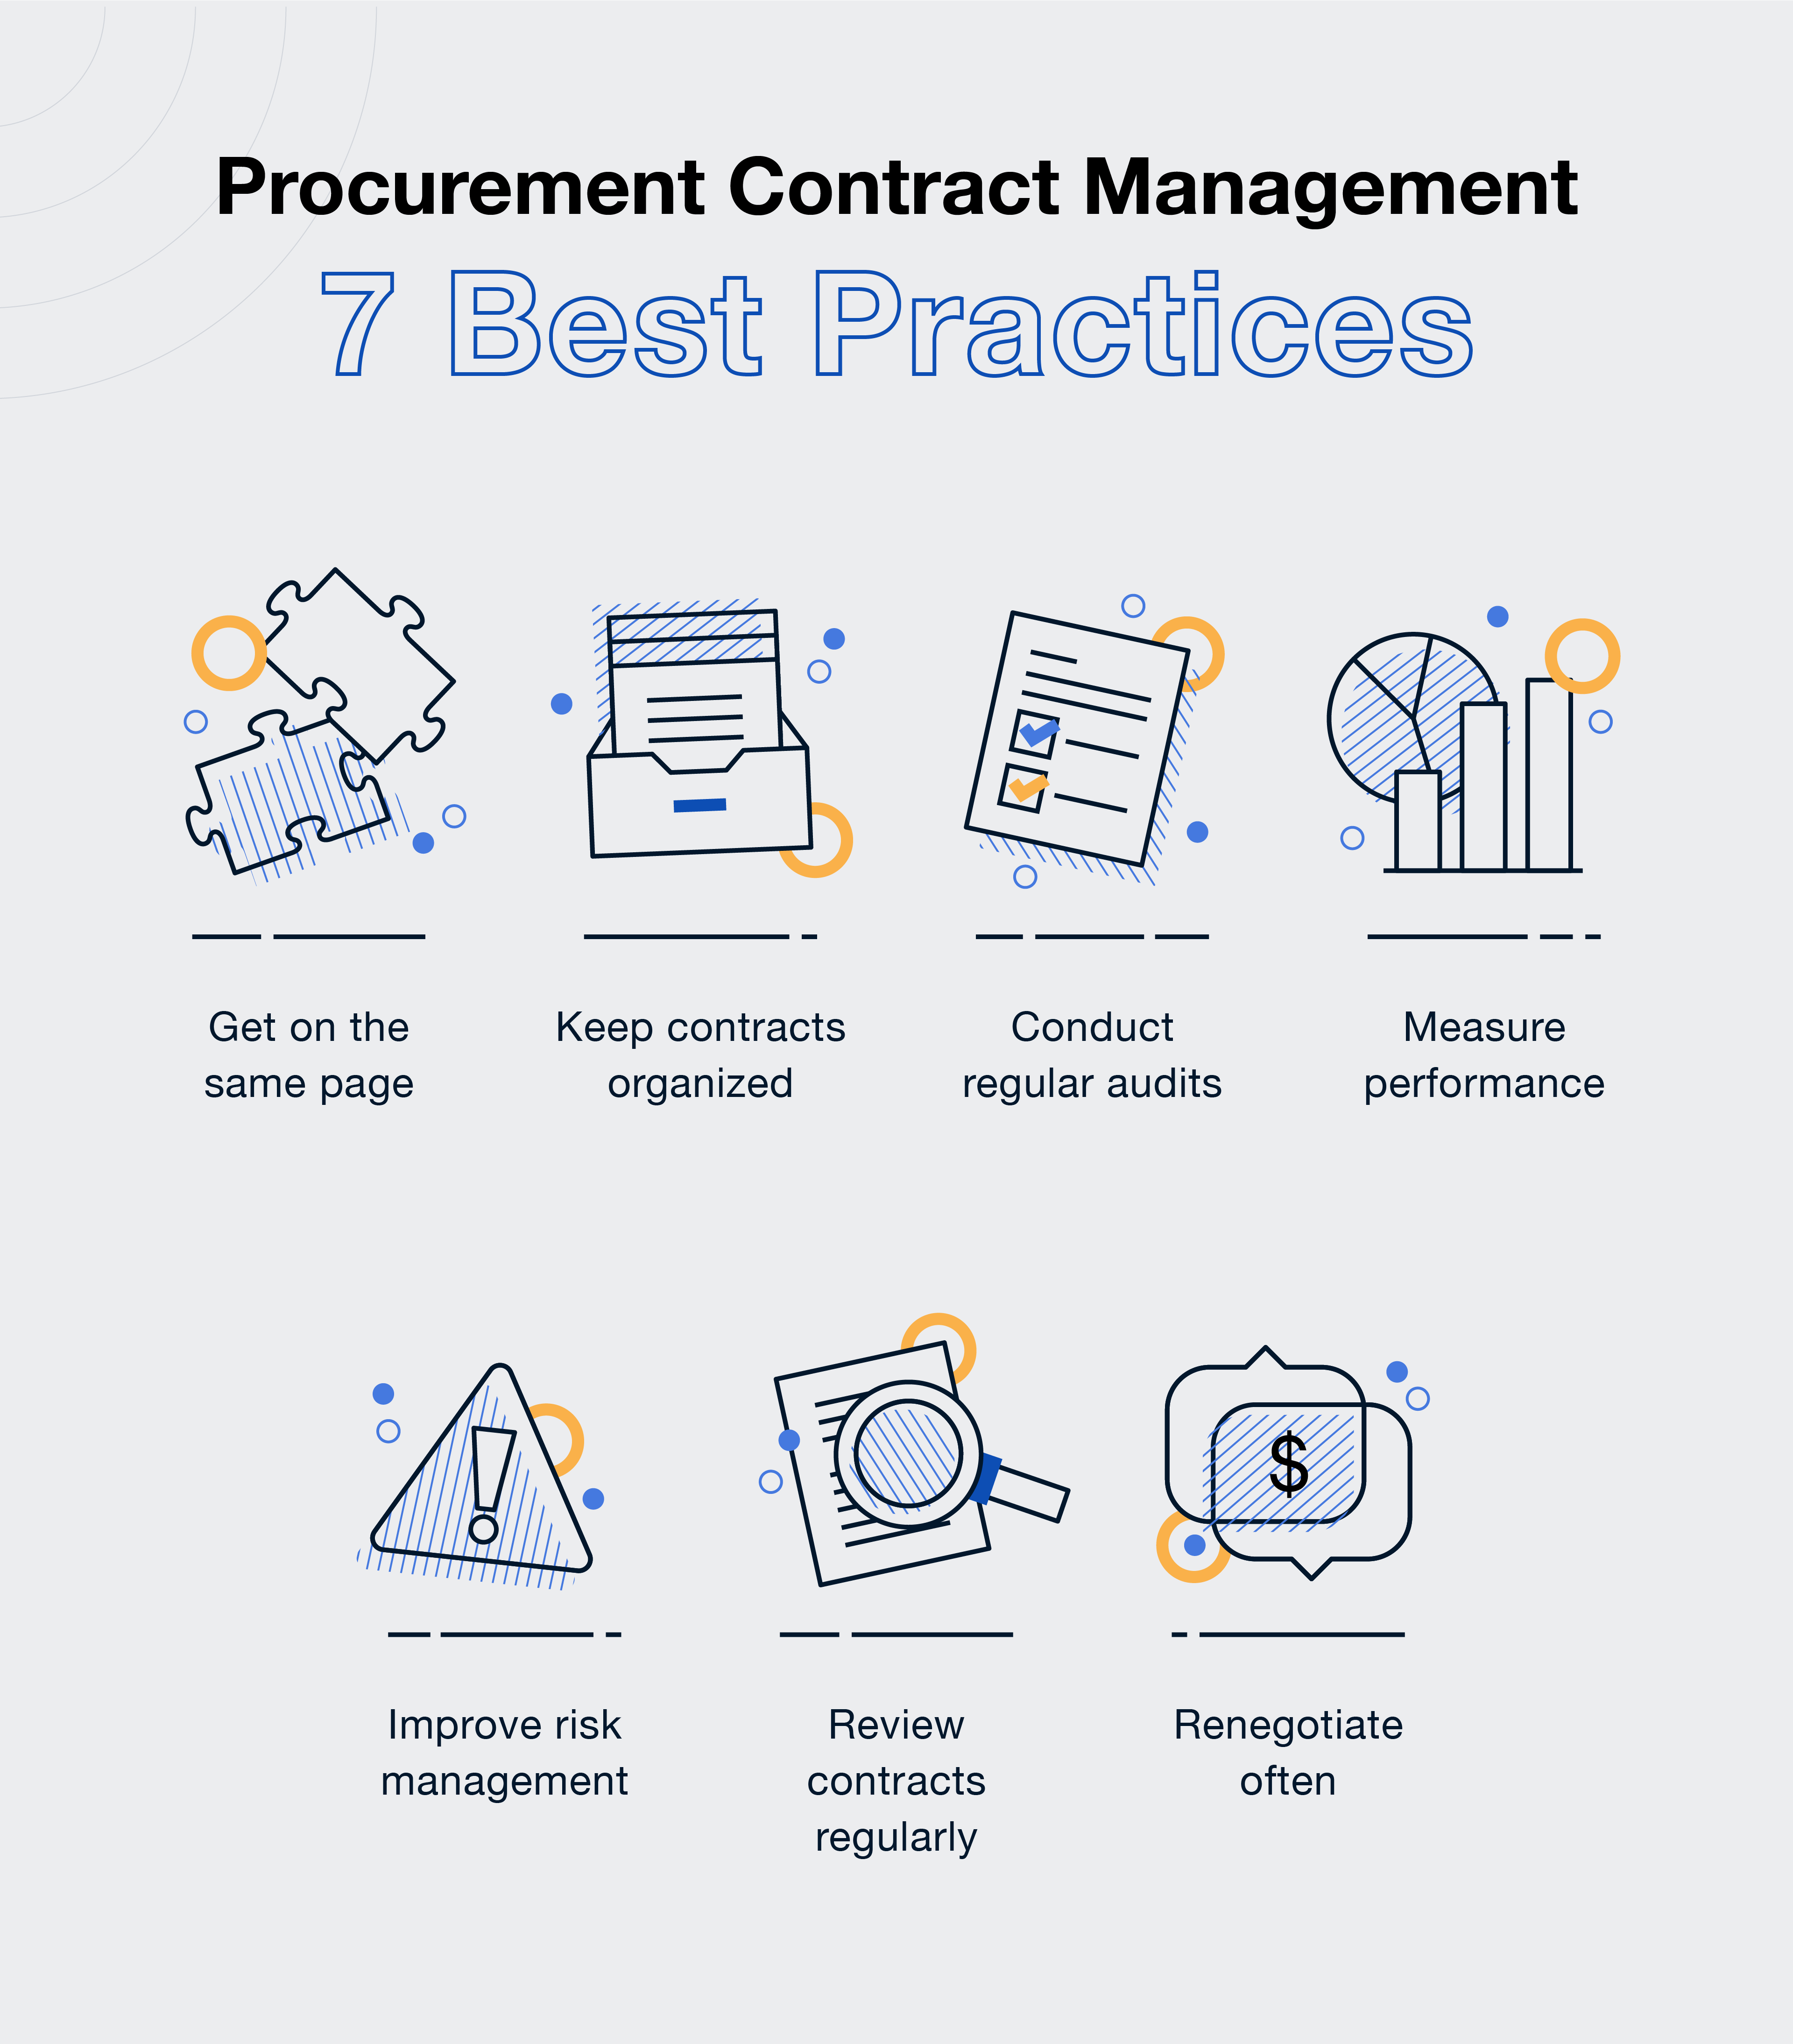 Procurement contract management best practices